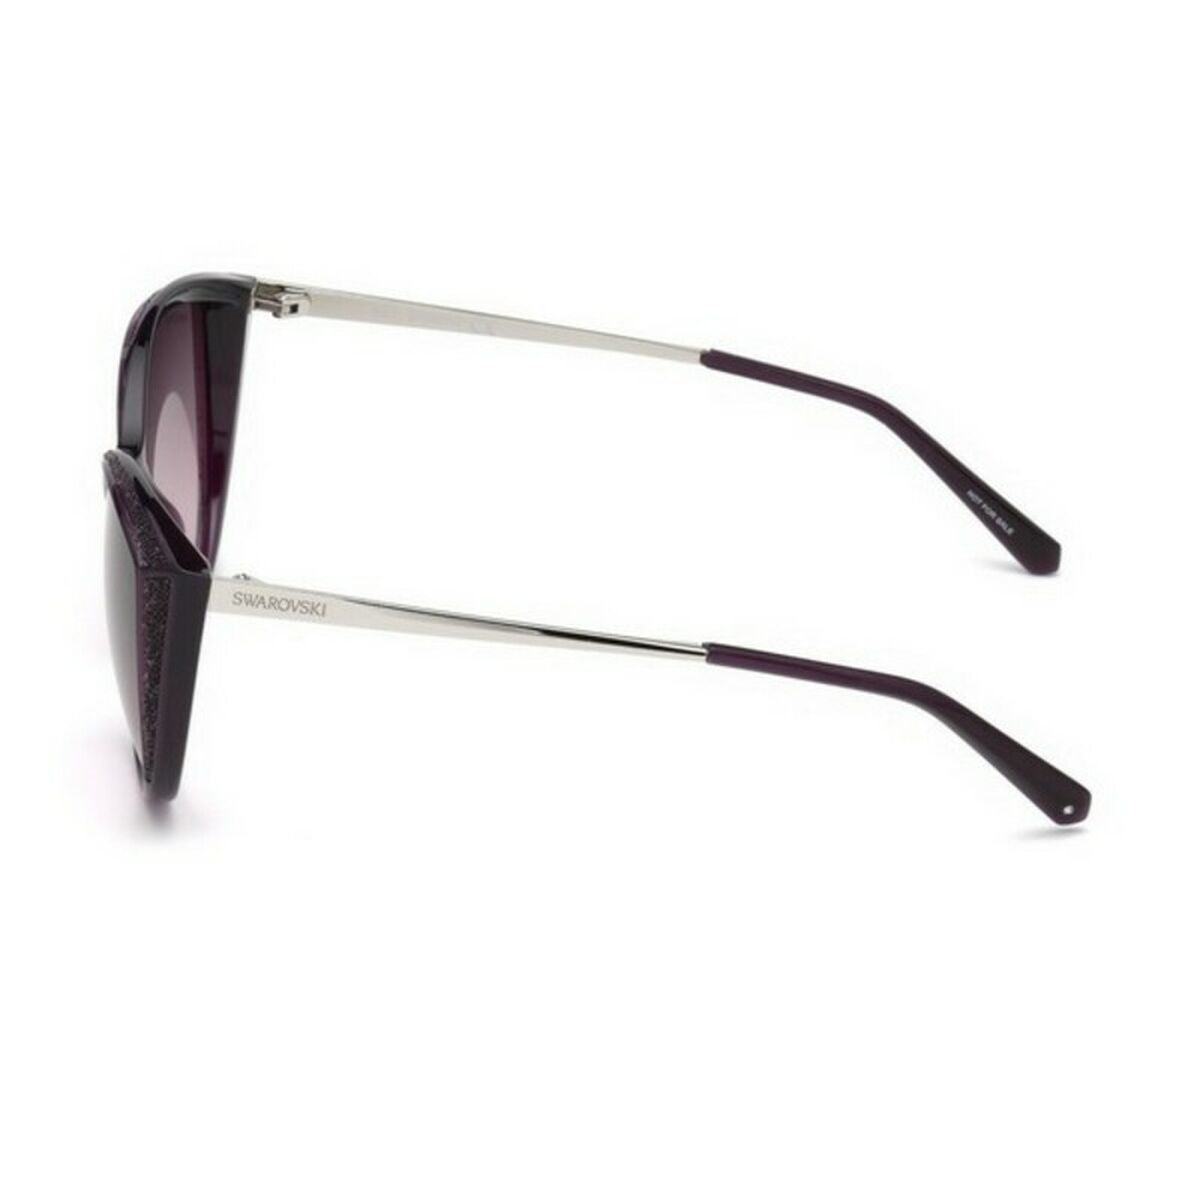 Kaufe Damensonnenbrille Swarovski SK016878F Ø 55 mm bei AWK Flagship um € 86.00